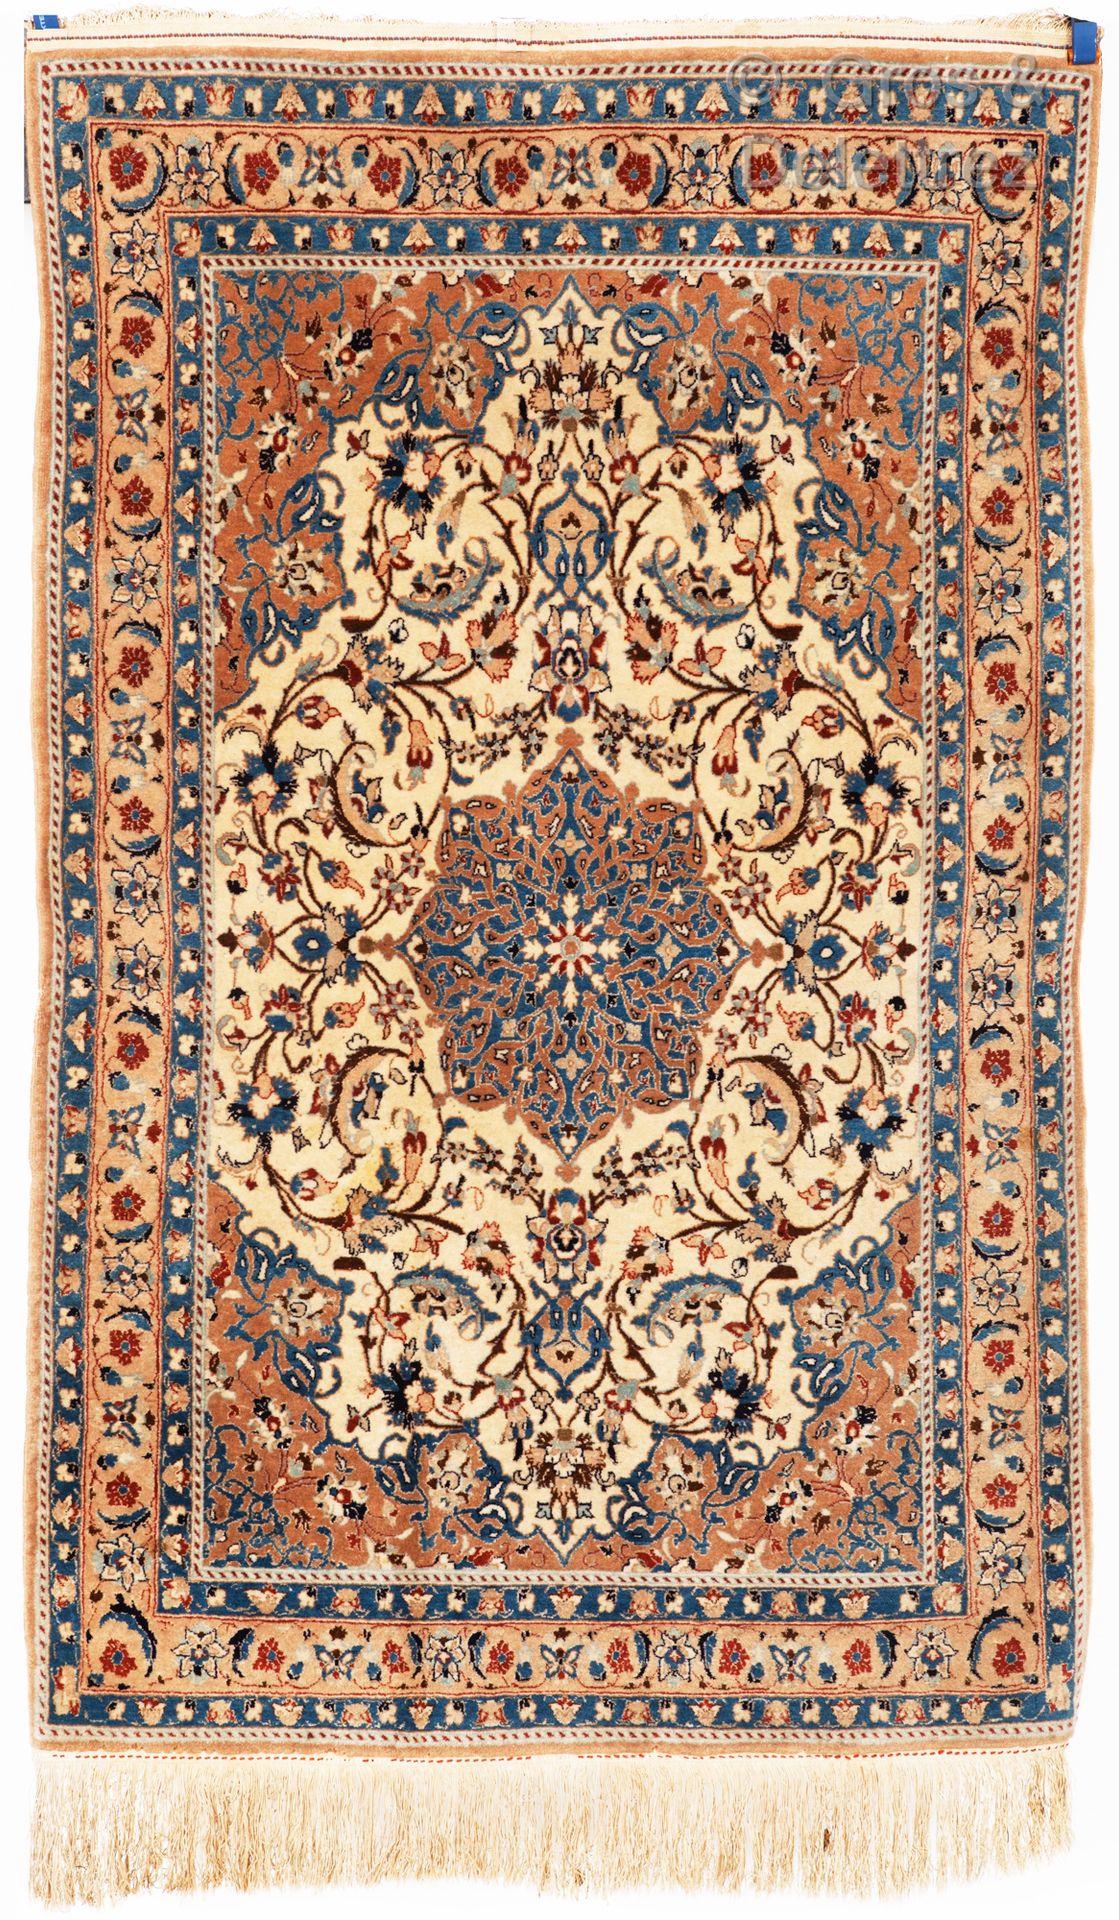 Null 伊斯法罕羊毛和丝绸地毯，伊朗

伊朗伊斯法罕羊毛地毯，带有丝绸的亮点。

在乳白色的背景上，有一个中央的徽章设计，上面有螺旋形的装饰，很突出。编结非常&hellip;